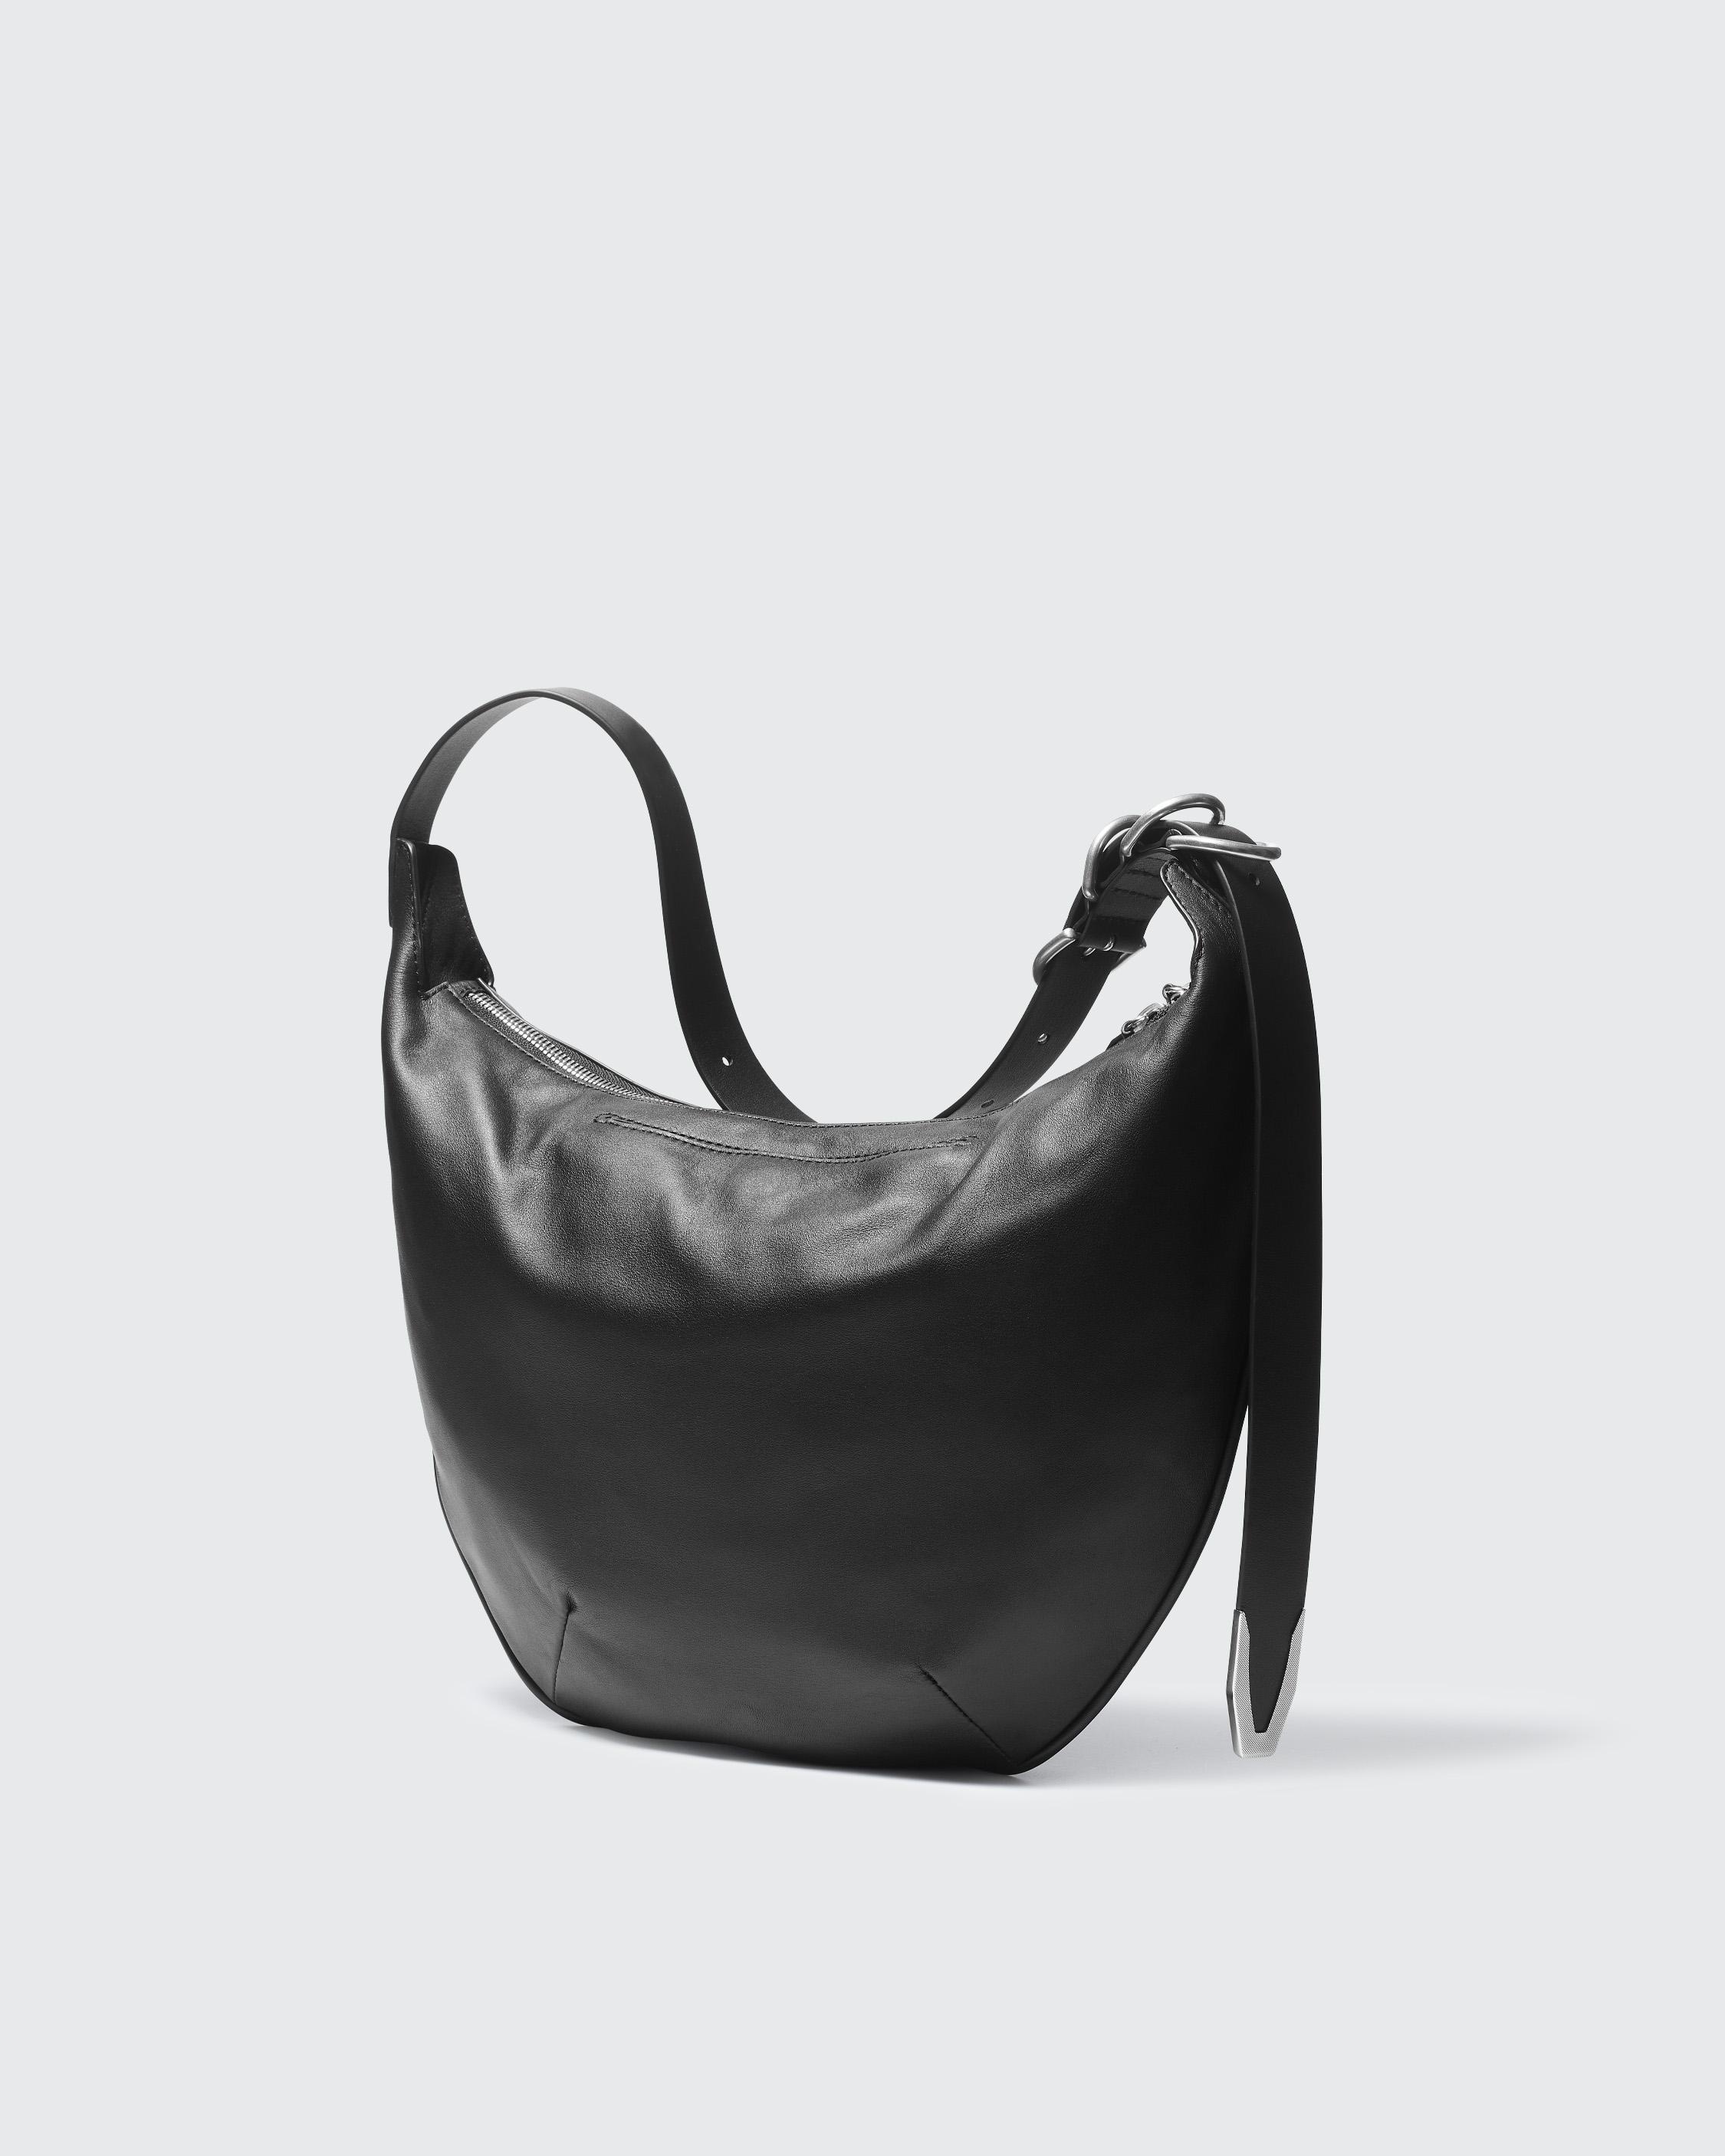 Spire Shoulder Bag - Leather
Medium Shoulder Bag - 4